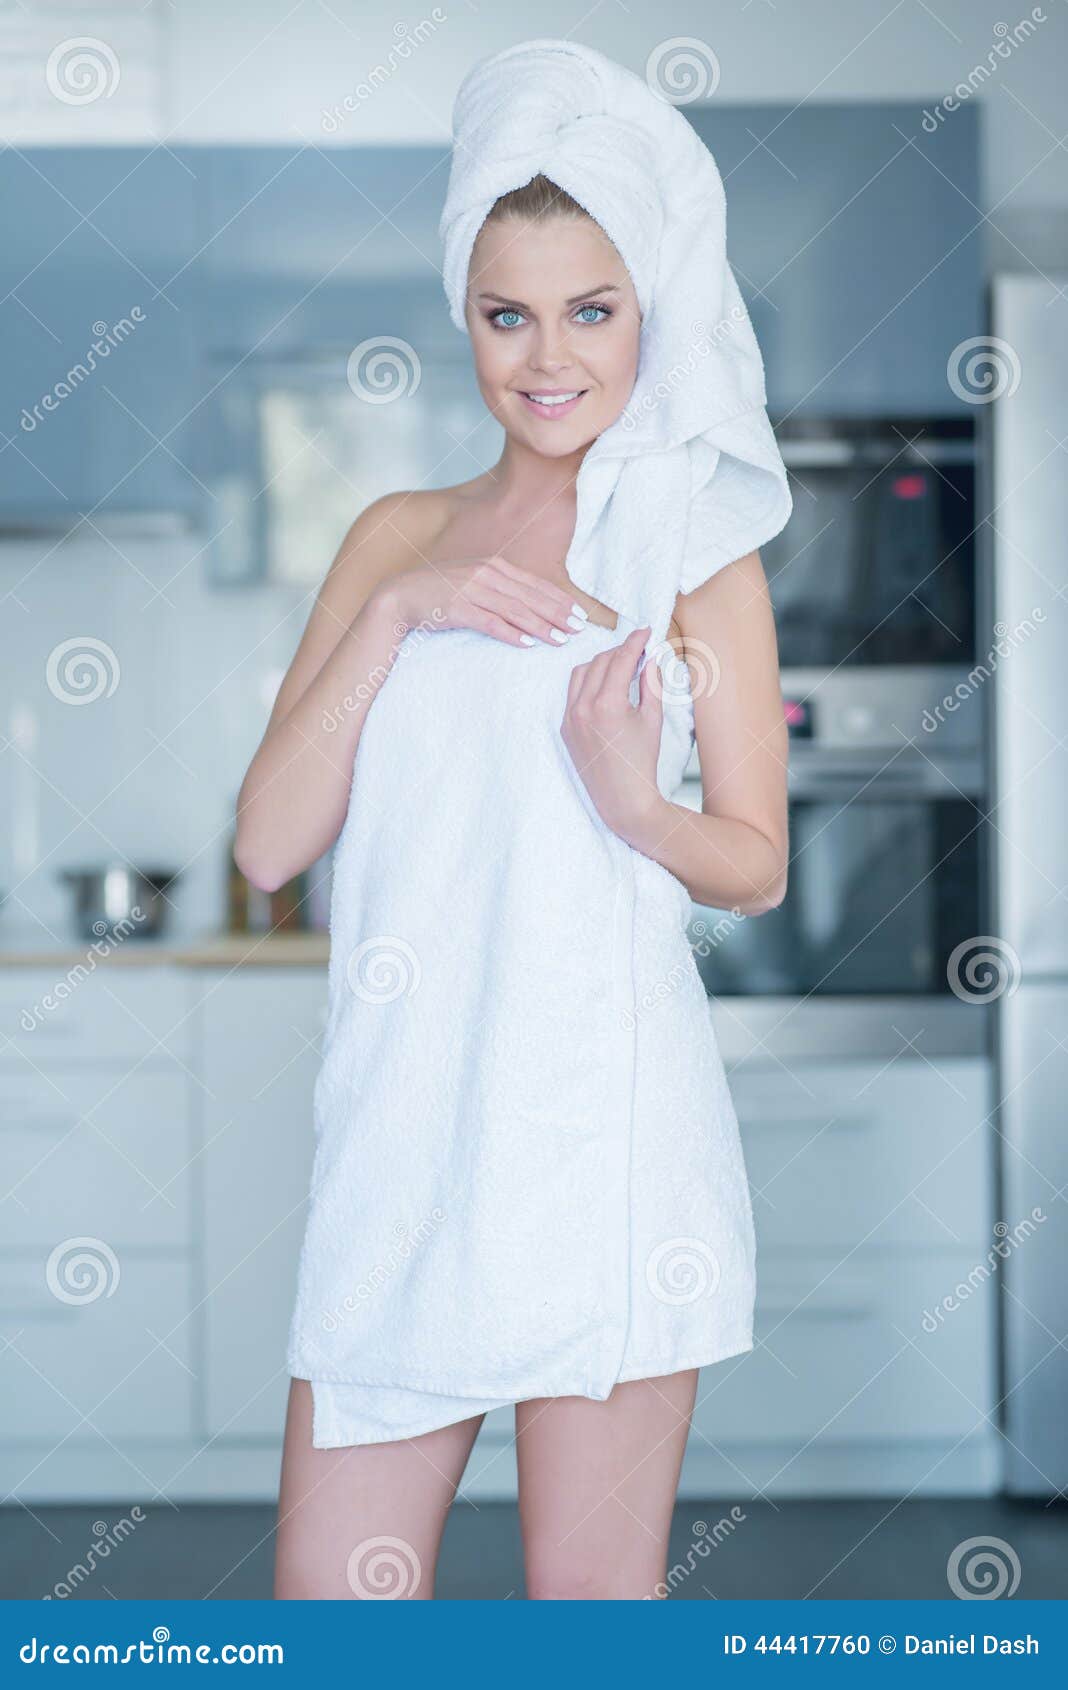 Девочка в полотенце. Девушка в полотенце. Девушка в полотенце на кухне. Молодые девушки в полотенце. Девушка в белом полотенце.